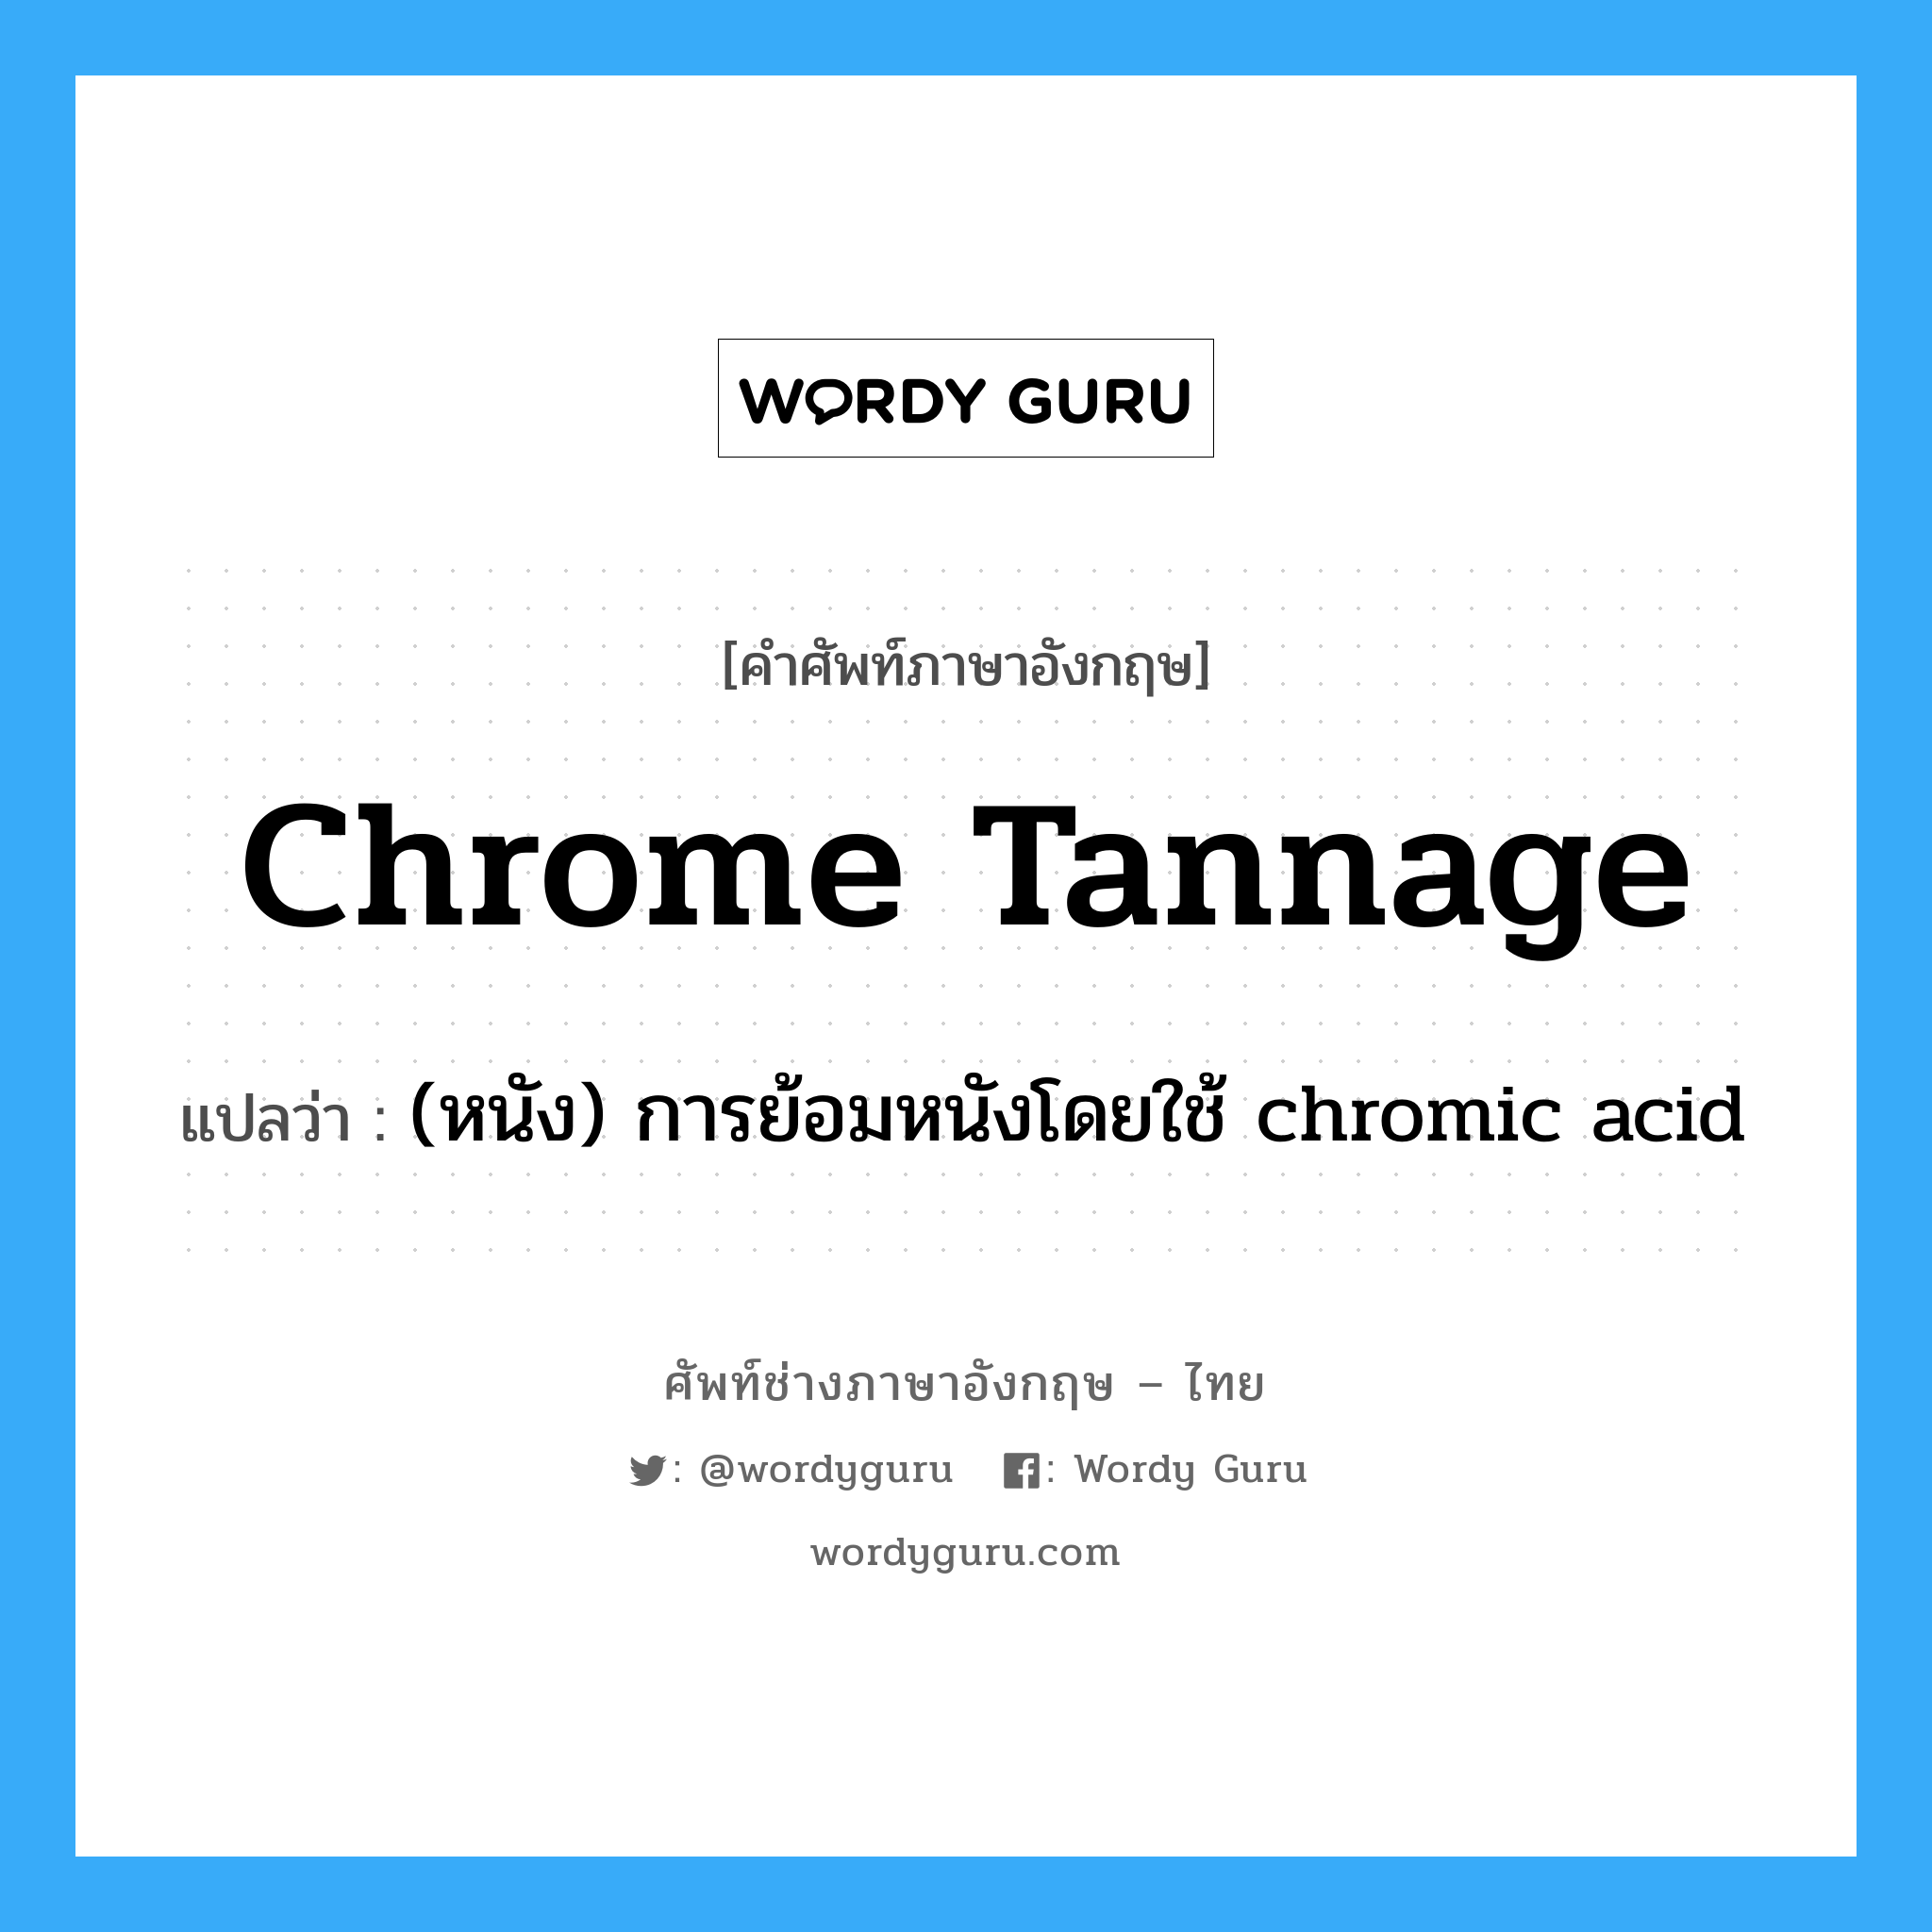 (หนัง) การย้อมหนังโดยใช้ chromic acid ภาษาอังกฤษ?, คำศัพท์ช่างภาษาอังกฤษ - ไทย (หนัง) การย้อมหนังโดยใช้ chromic acid คำศัพท์ภาษาอังกฤษ (หนัง) การย้อมหนังโดยใช้ chromic acid แปลว่า chrome tannage